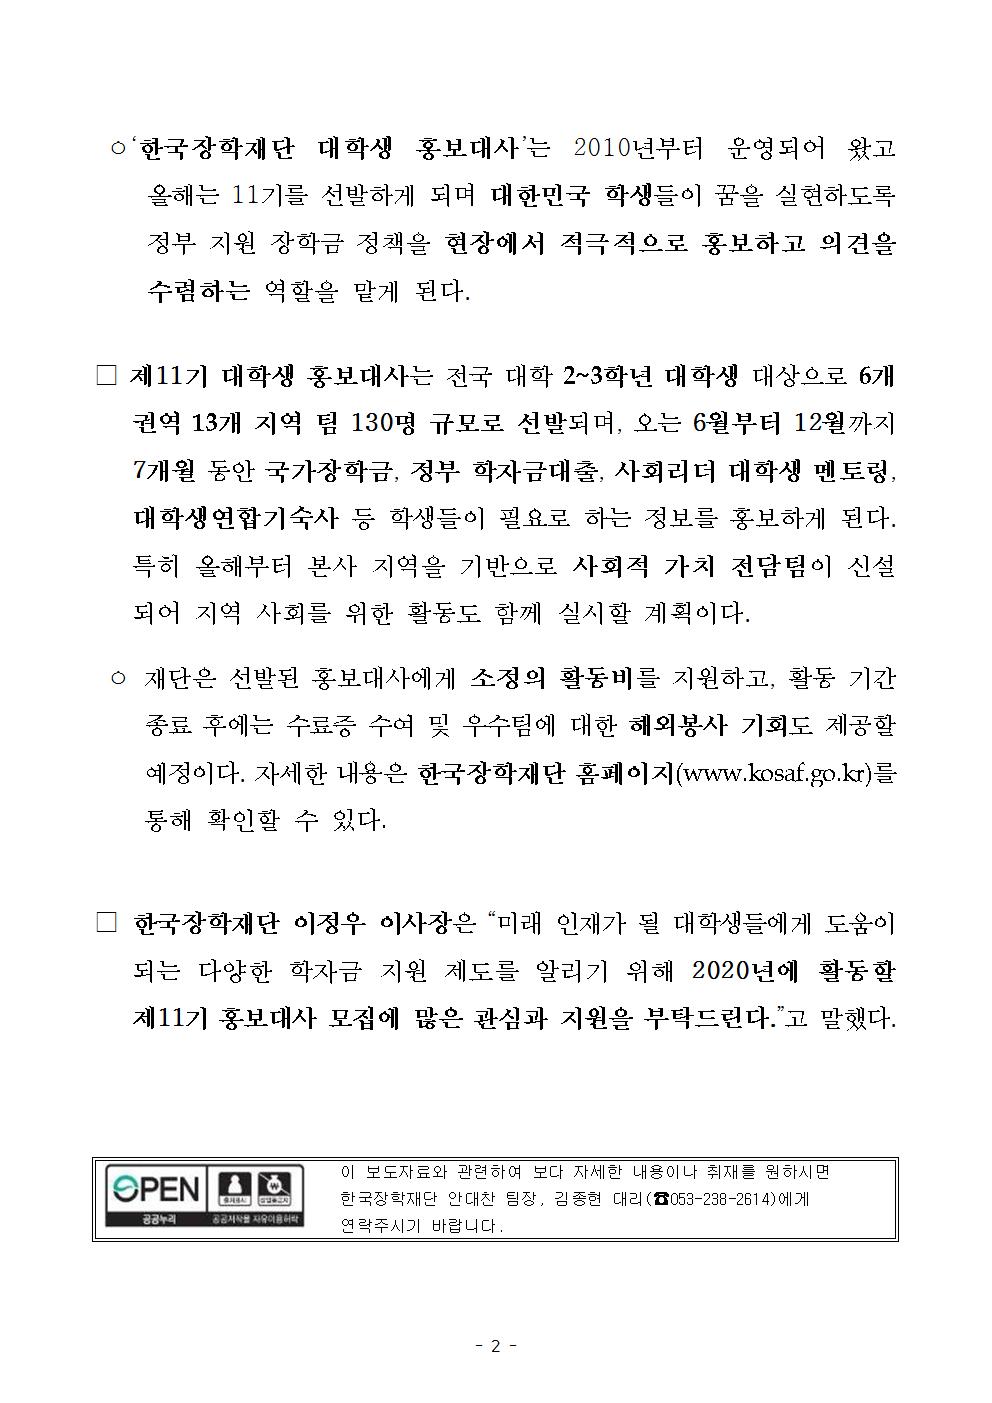 04-13(월)[보도자료] 제11기 한국장학재단 대학생 홍보대사 모집002.jpg